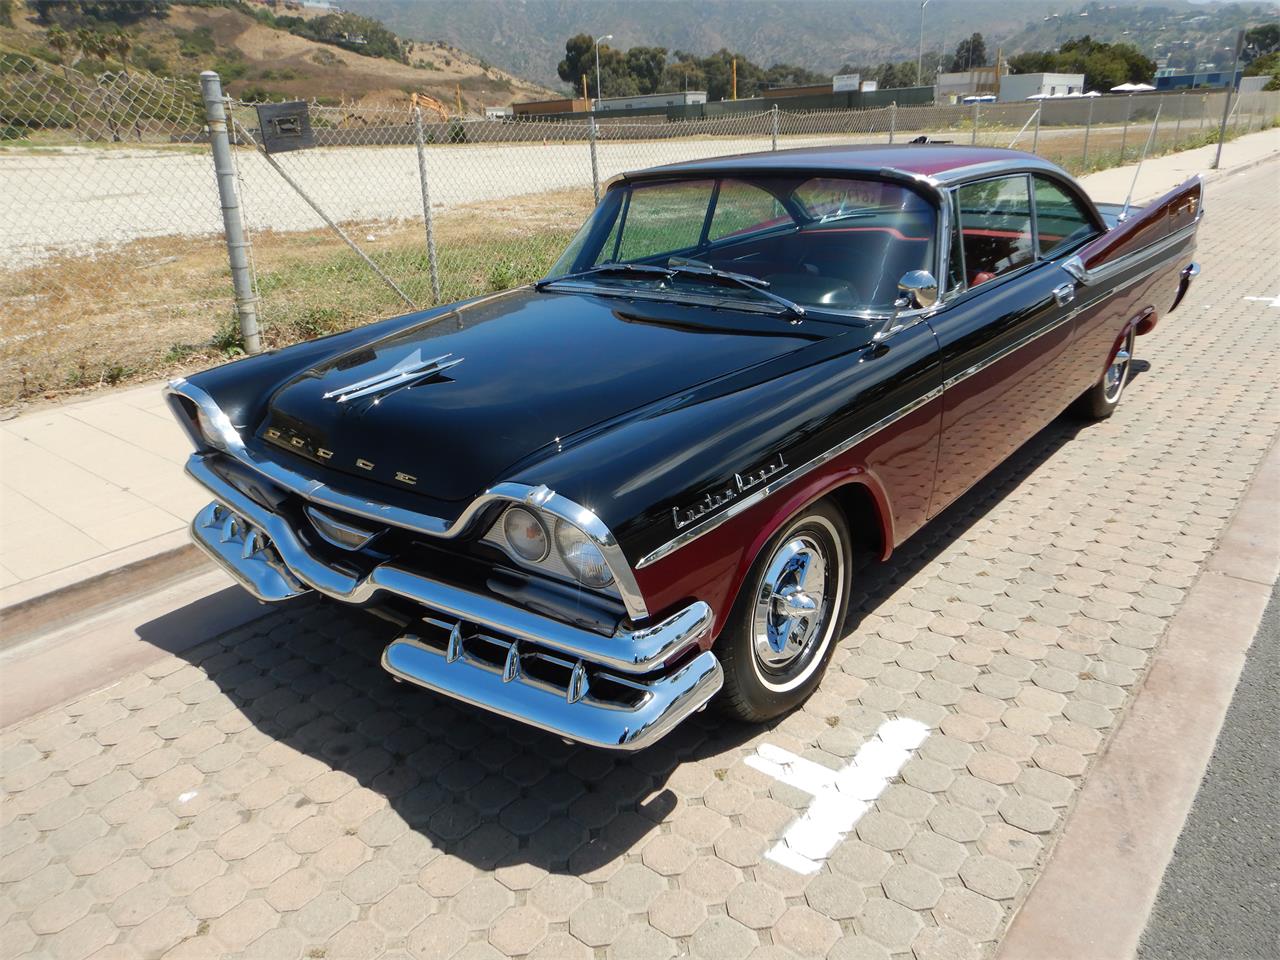 1957 Dodge Lancer for sale in Woodland Hills, CA - photo 2.